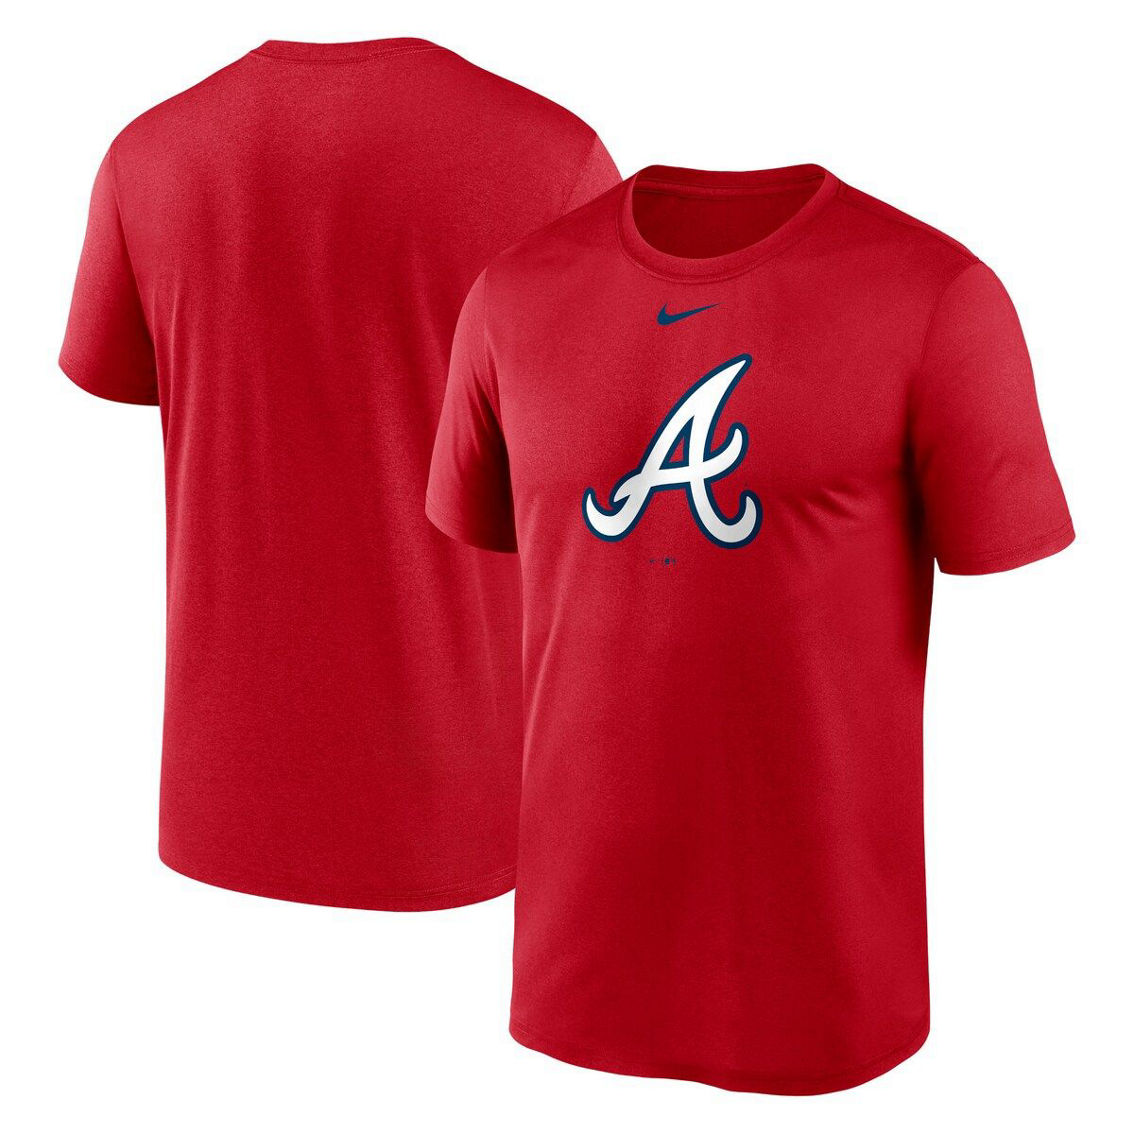 Nike Men's Red Atlanta Braves New Legend Logo T-Shirt - Image 2 of 4